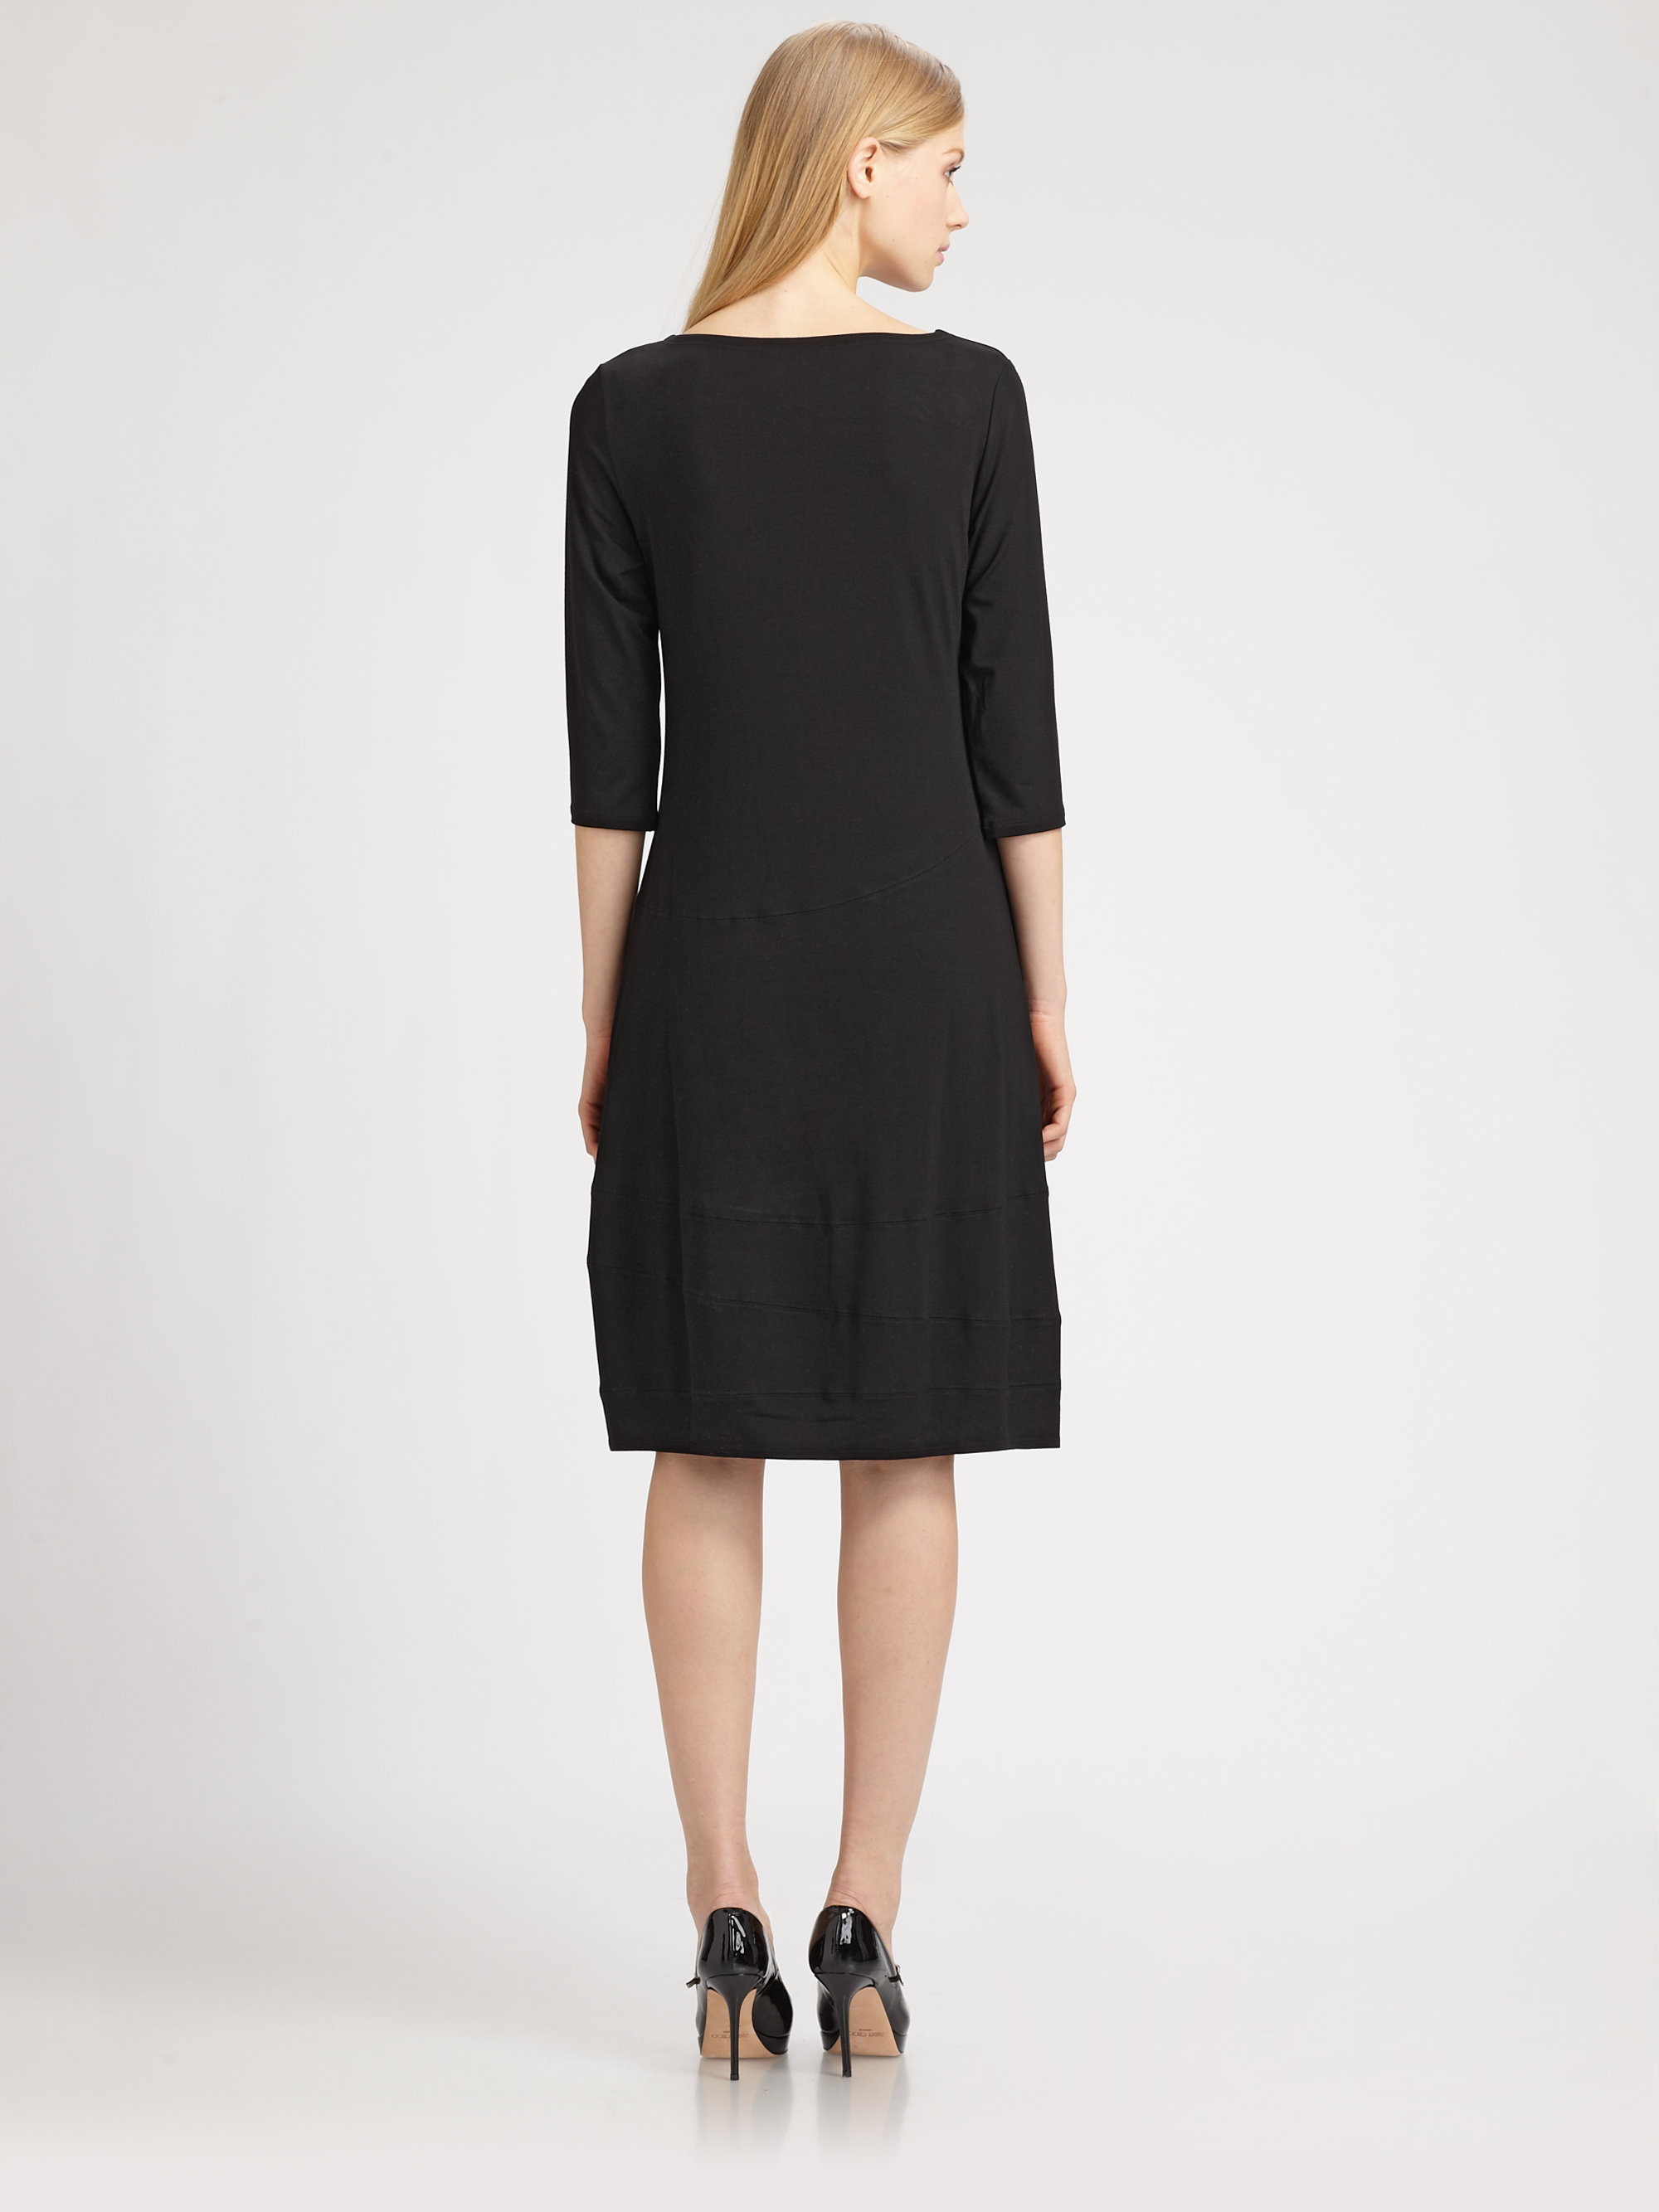 Lyst - Eileen Fisher Jersey Dress in Black